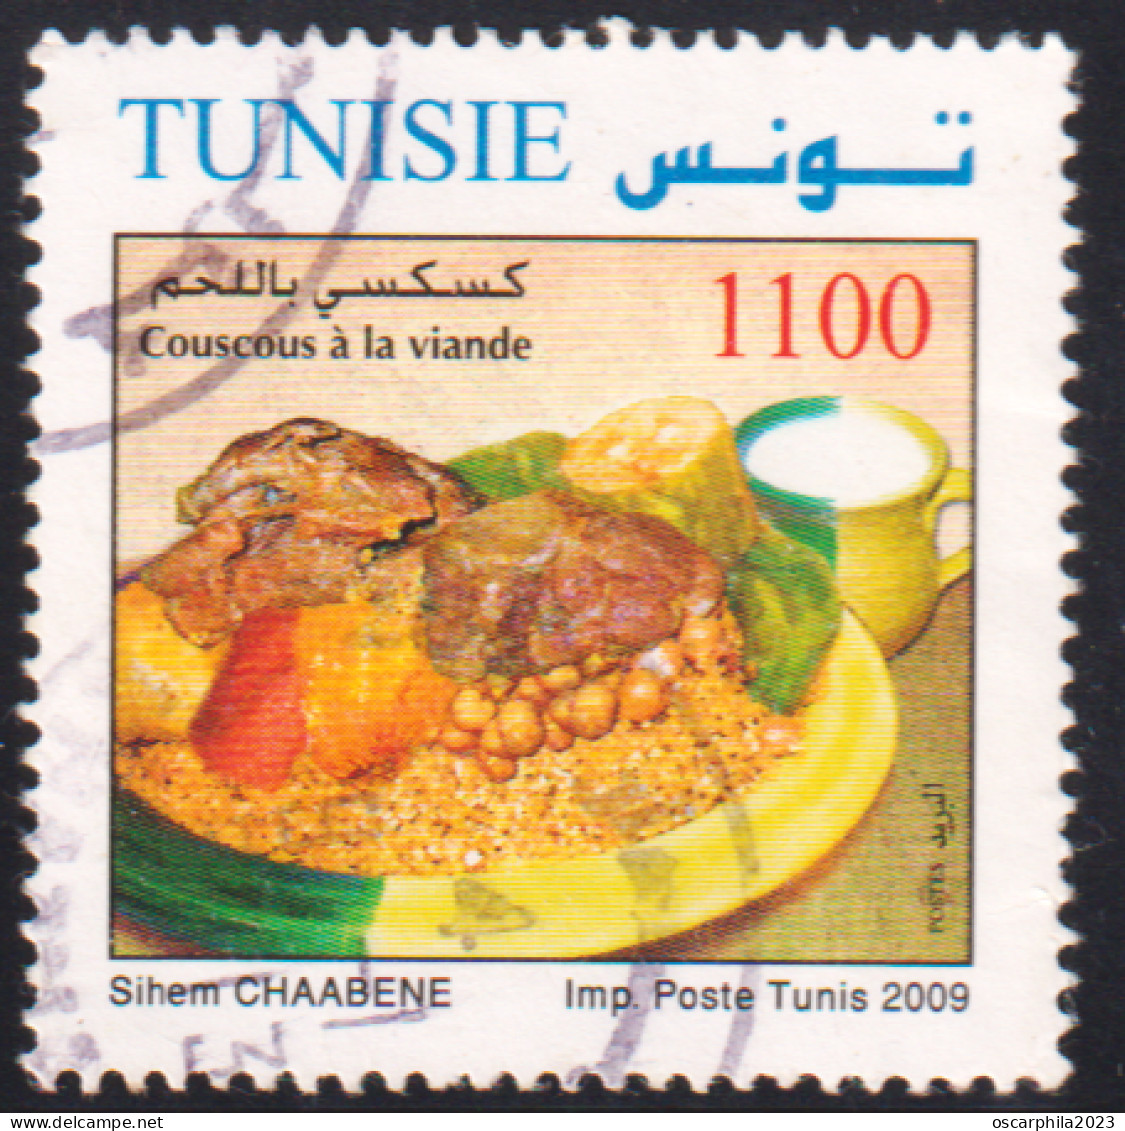 2009- Tunisie - Y&T 1650-  Plats De Tunisie - Couscous à La Viande - OBLI - Ernährung